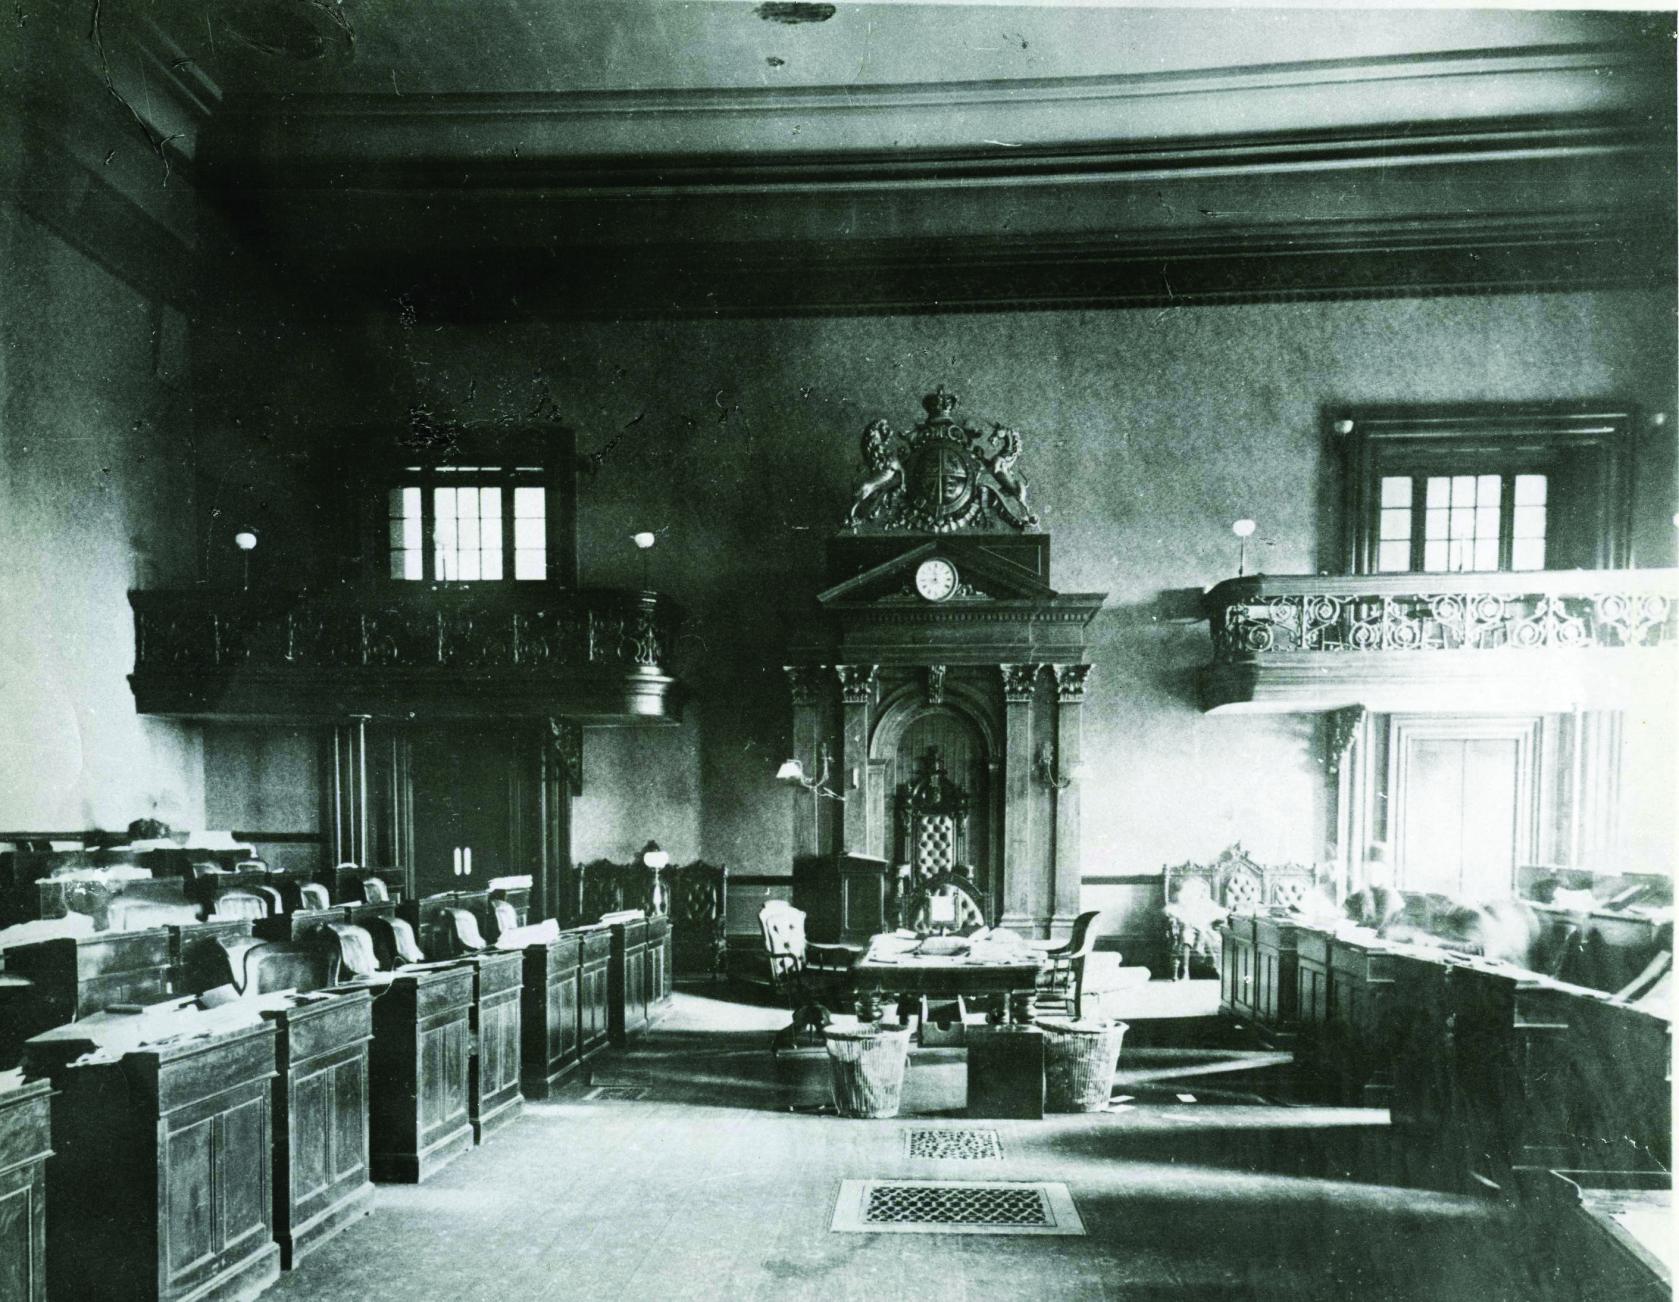 Vue de la chambre législative, Assemblée de la rue Front, vers la fin du 19e siècle